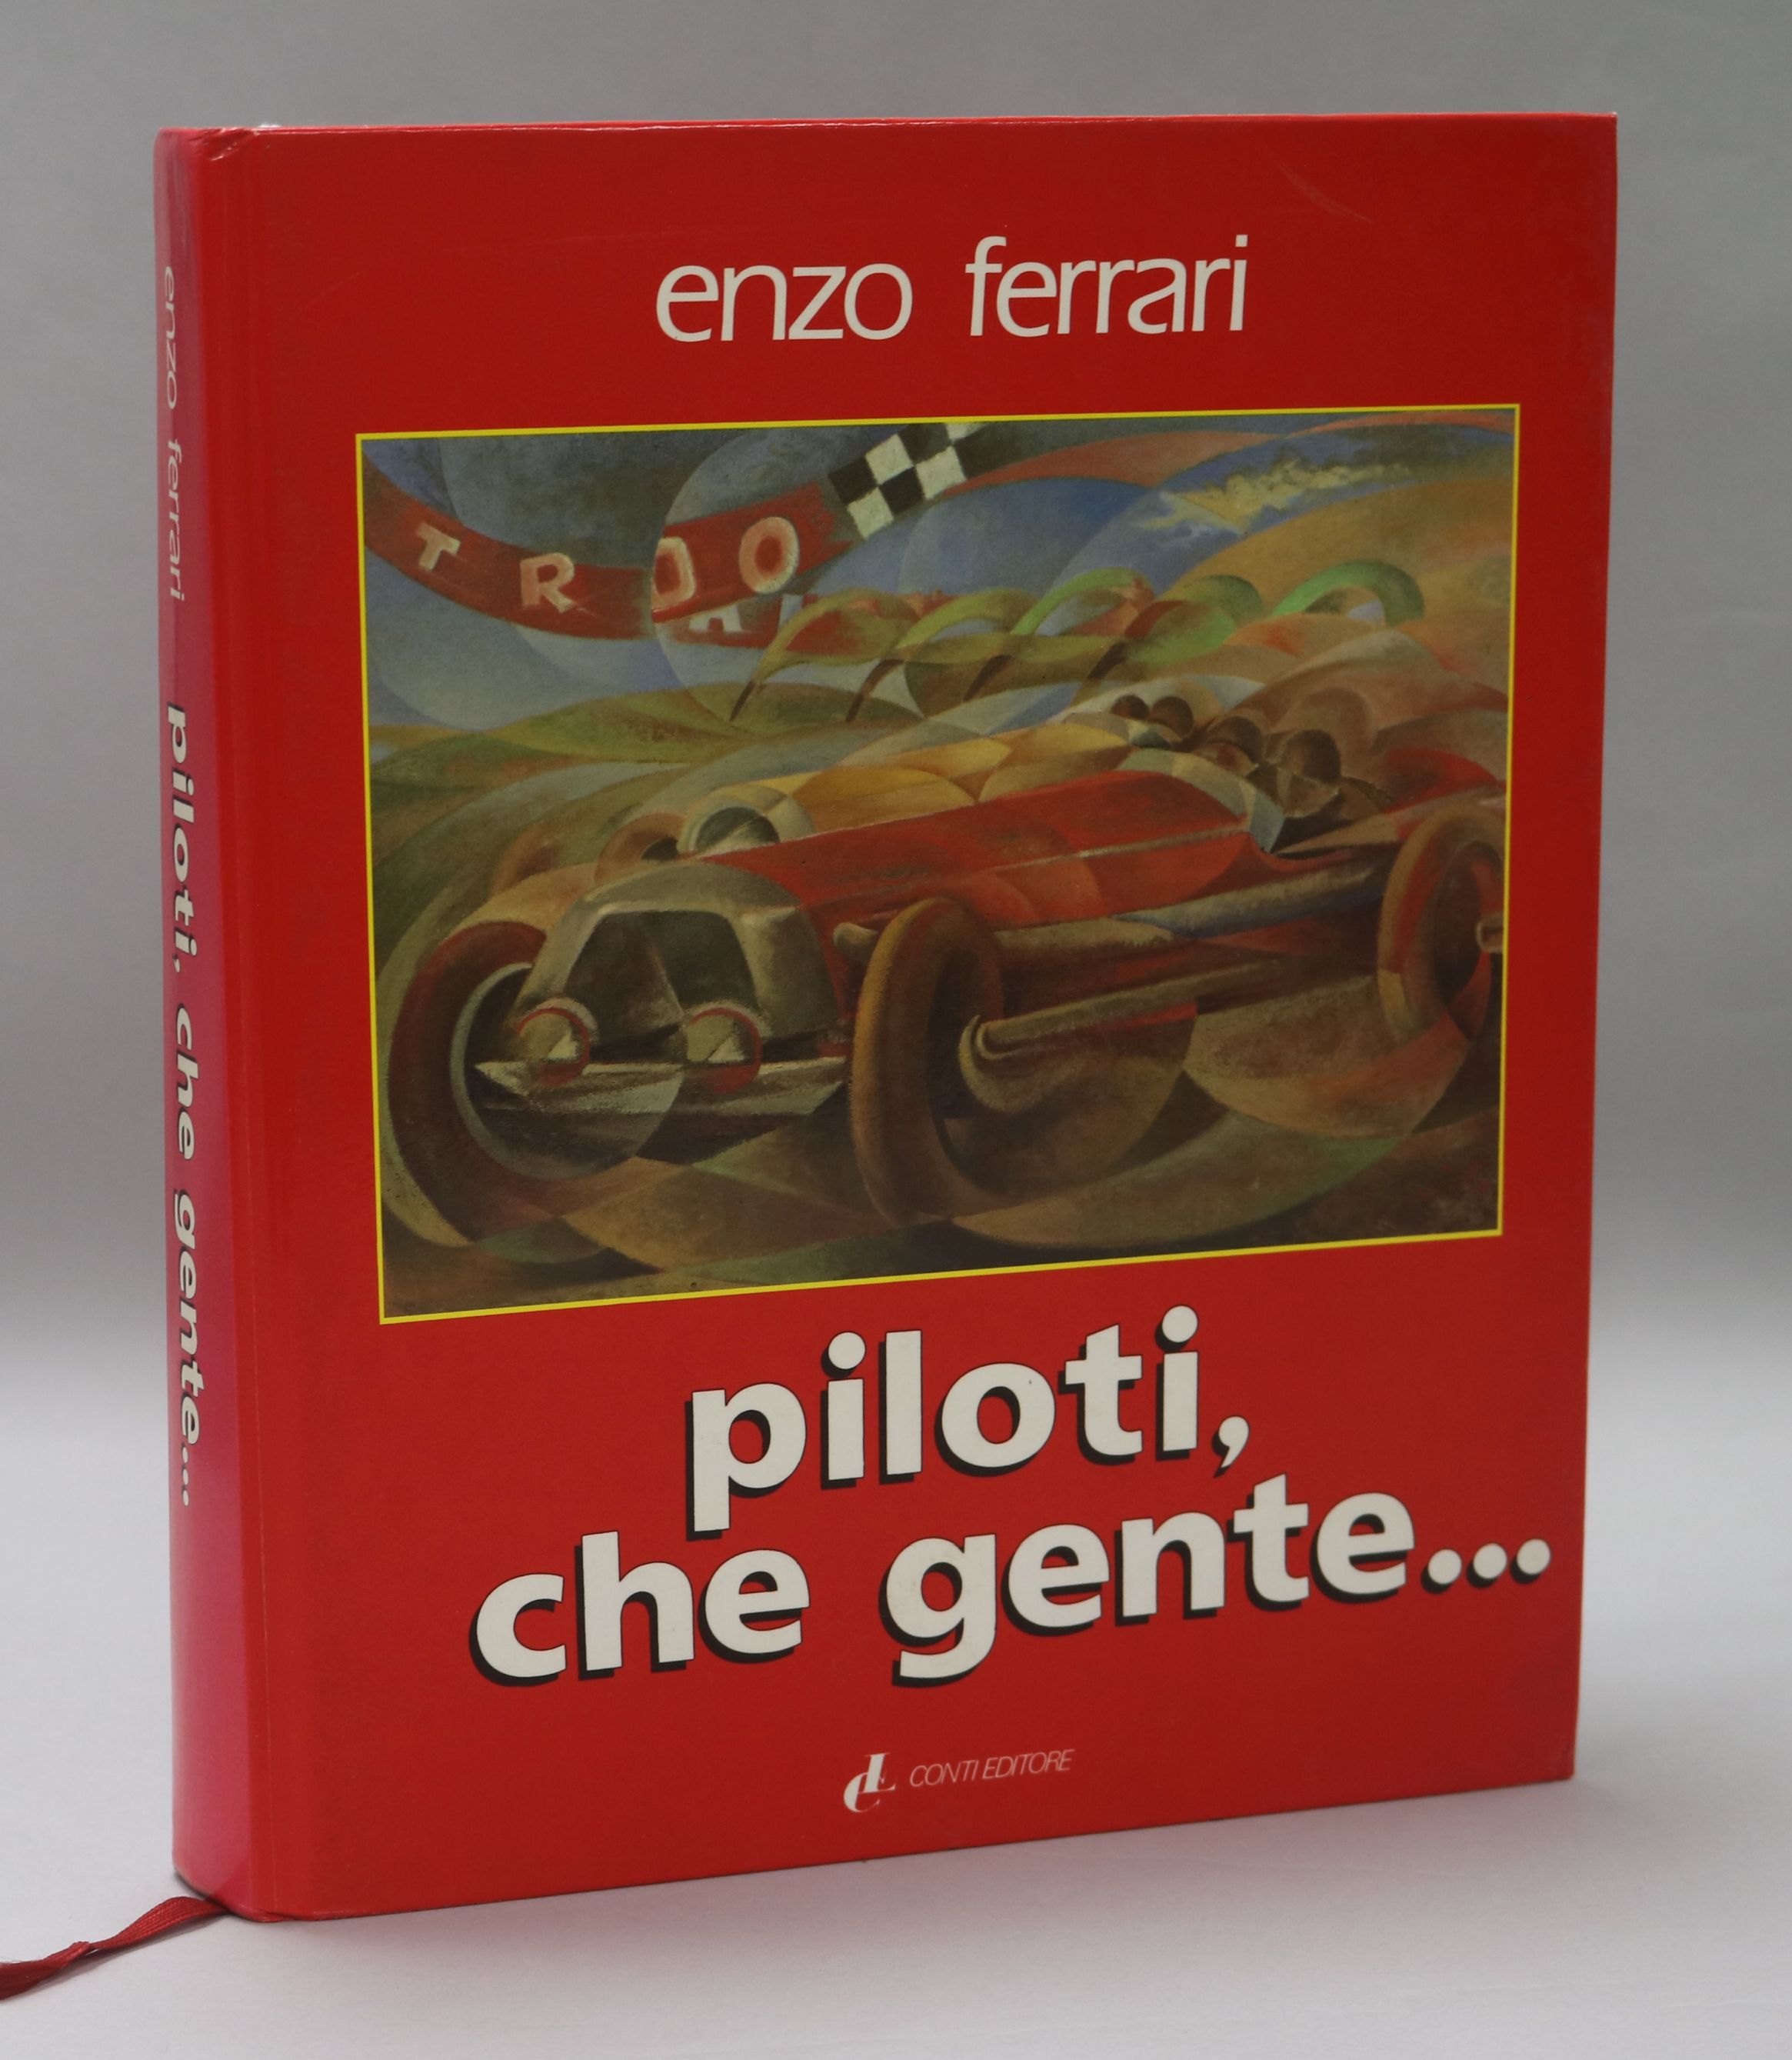 Enzo Ferrari - "Piloti, Che Gente" - A History of Ferrari Automobile Racing, published by Conti